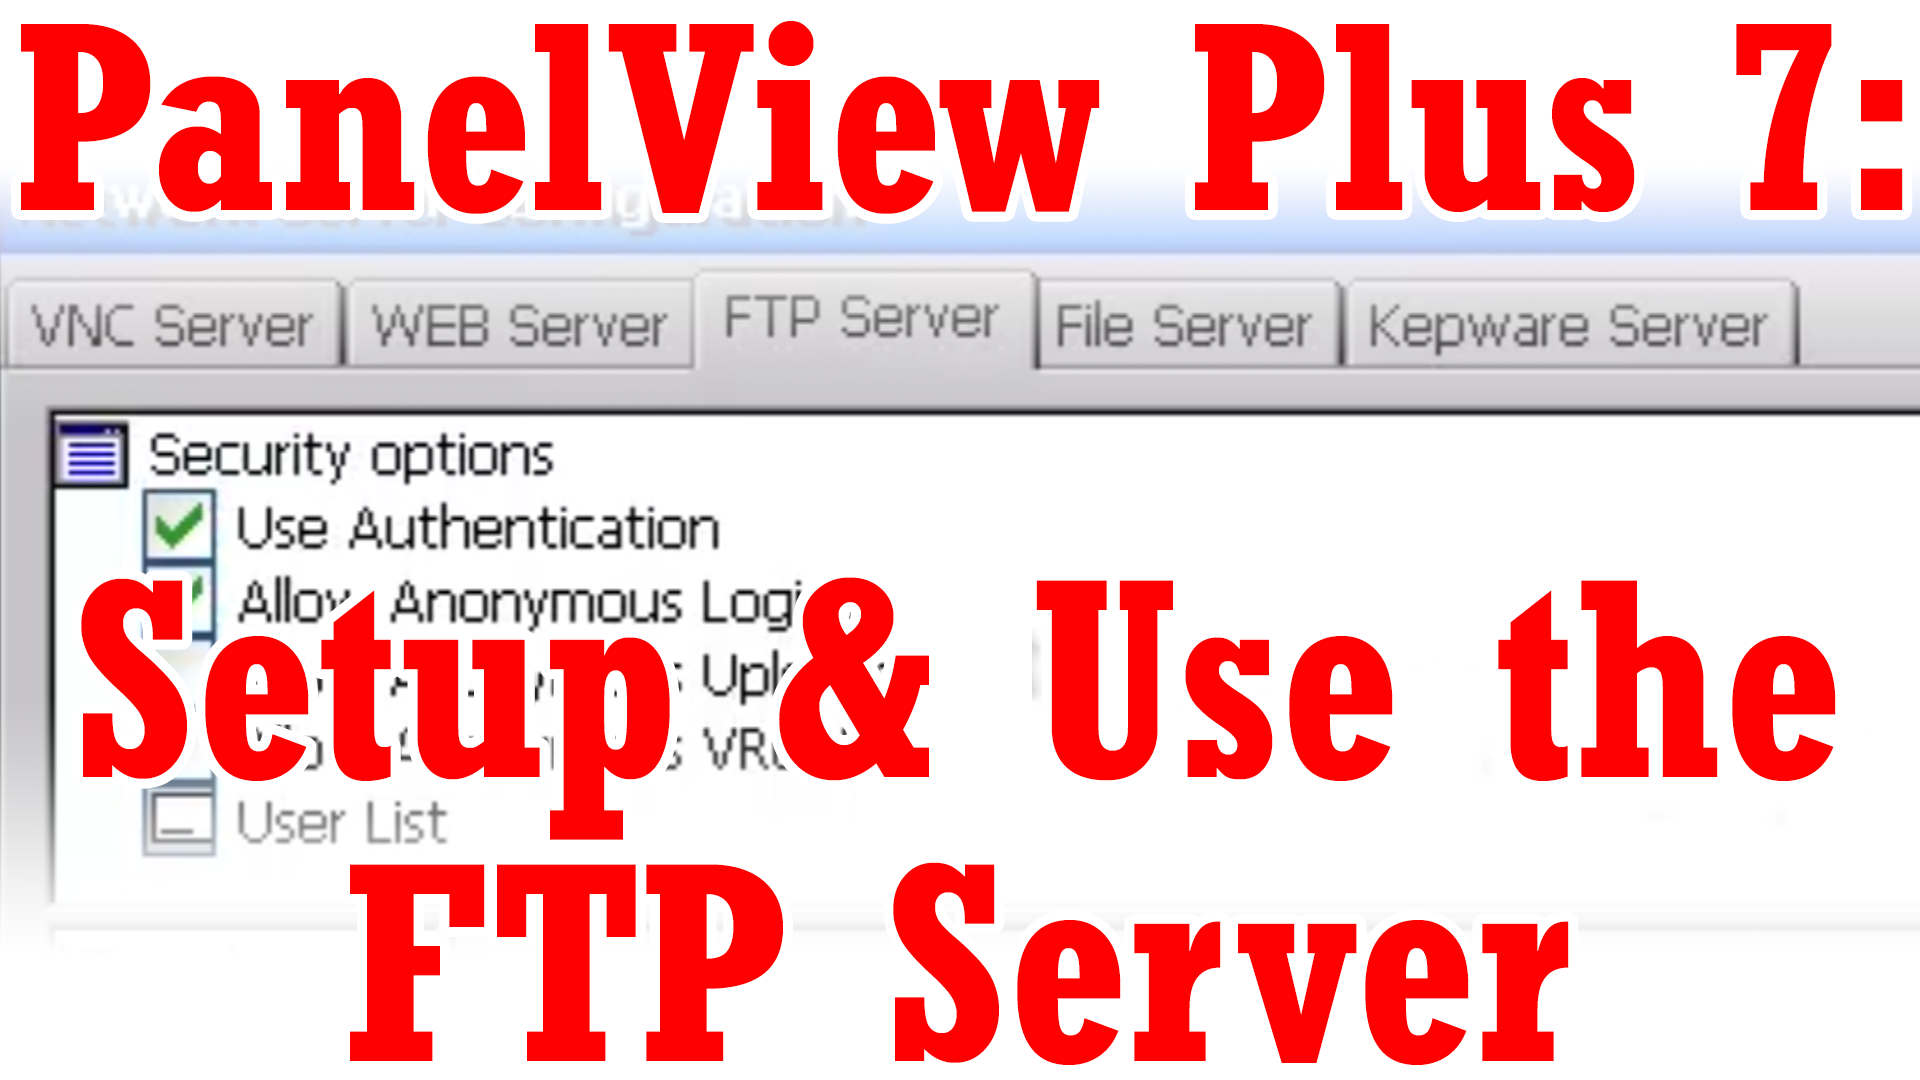 PanelView Plus 7 - Setup and Use FTP Server